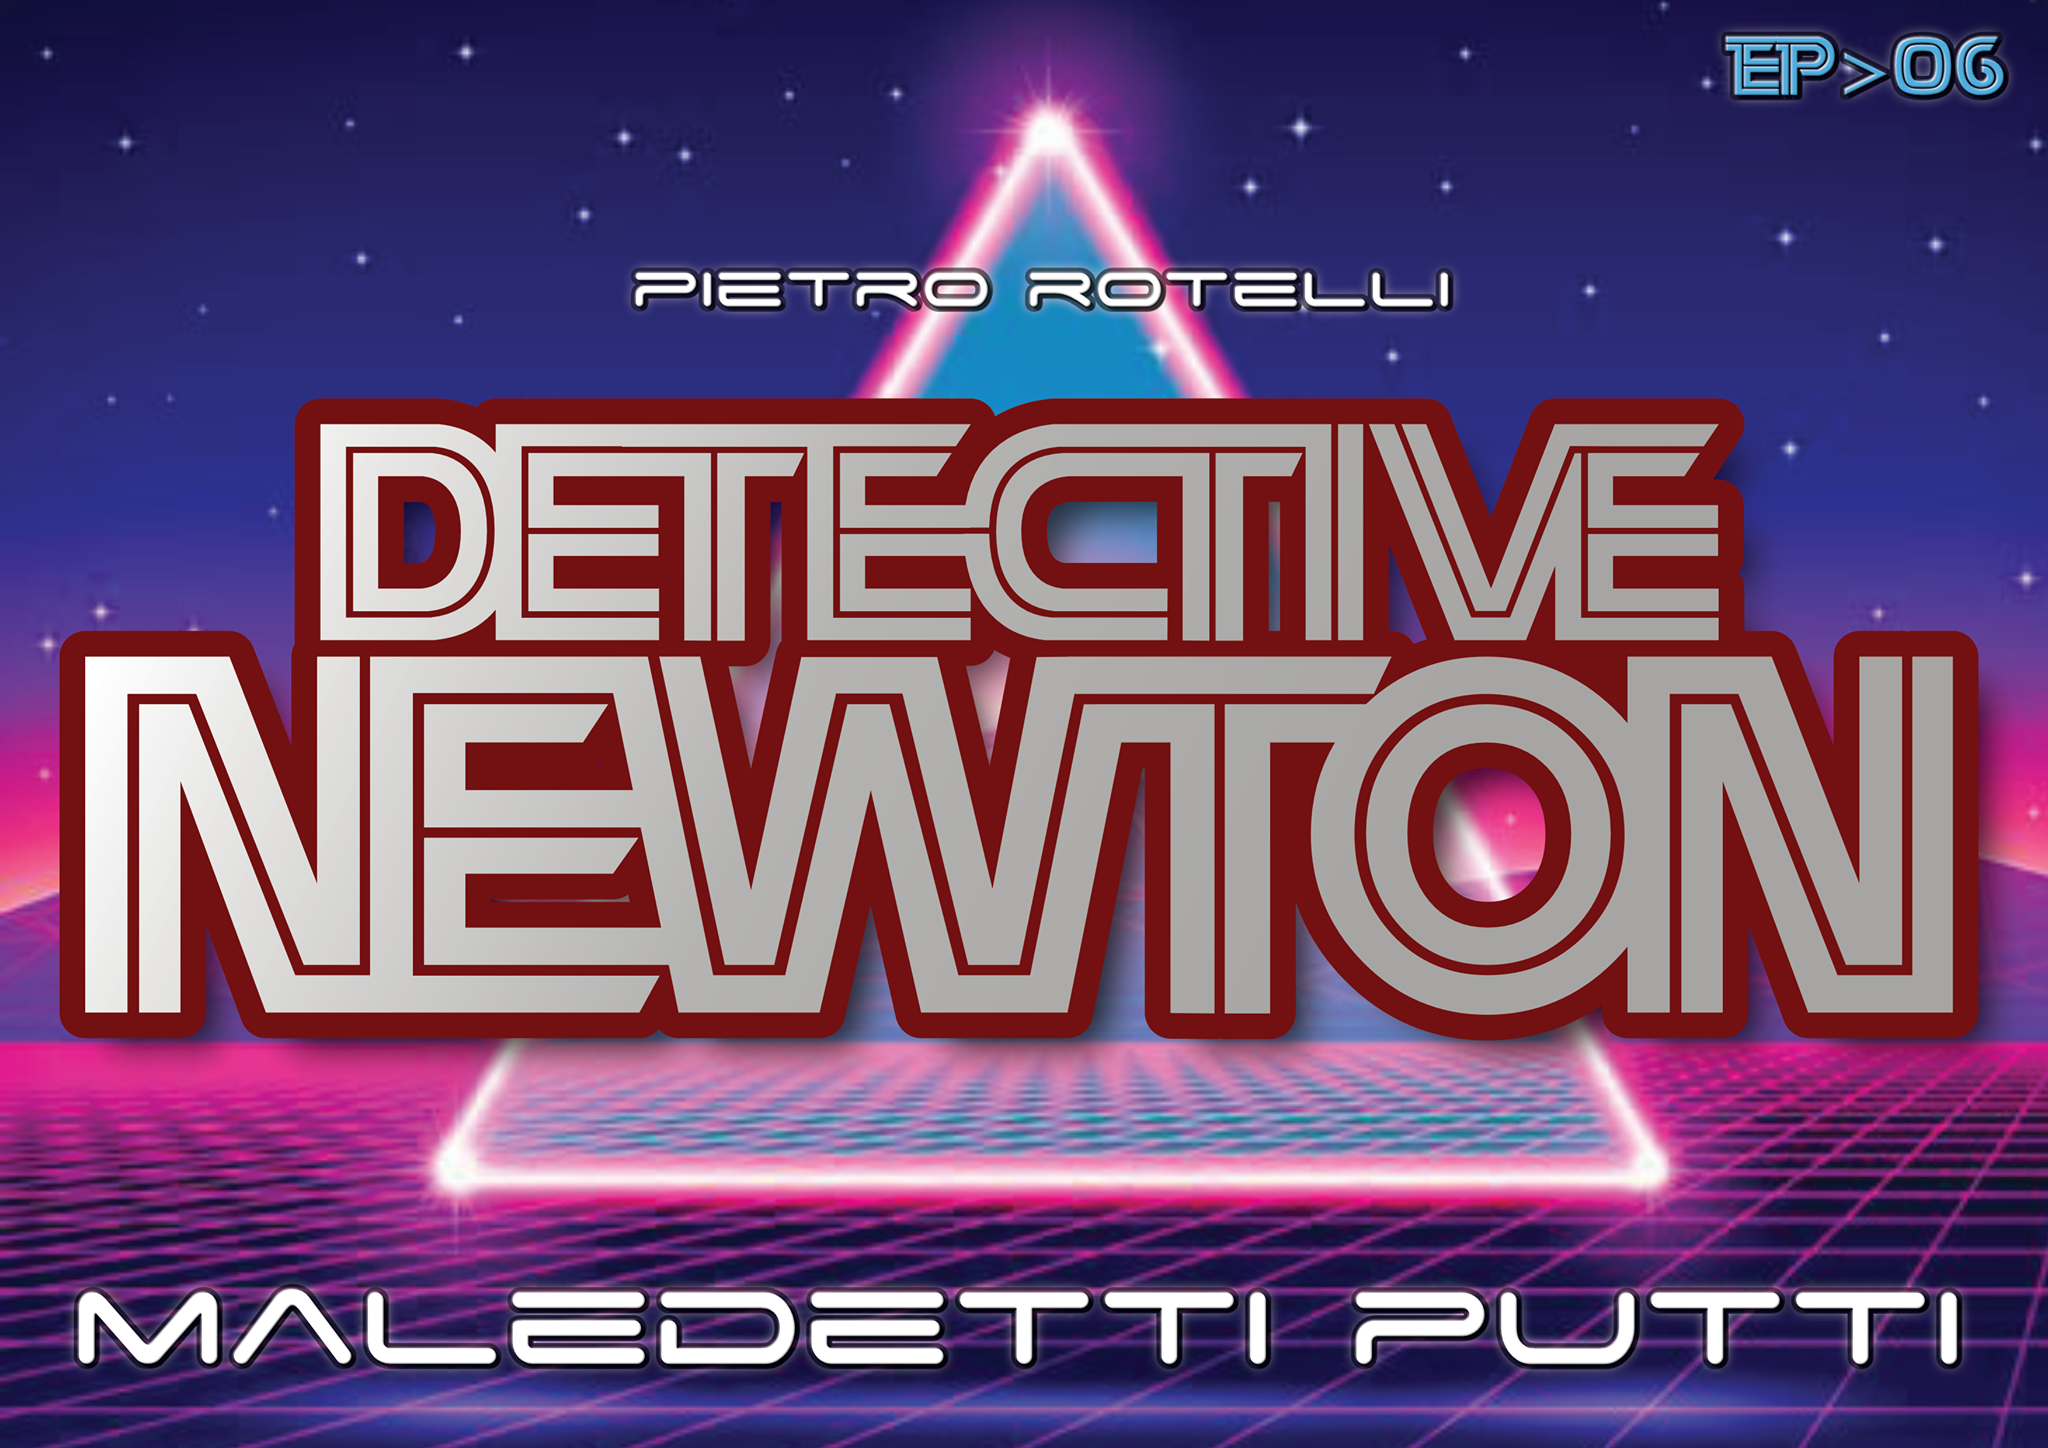 Ian Mcdonald - Maledetti Putti (Un'Avventura Del Detective Newton Ep.06)